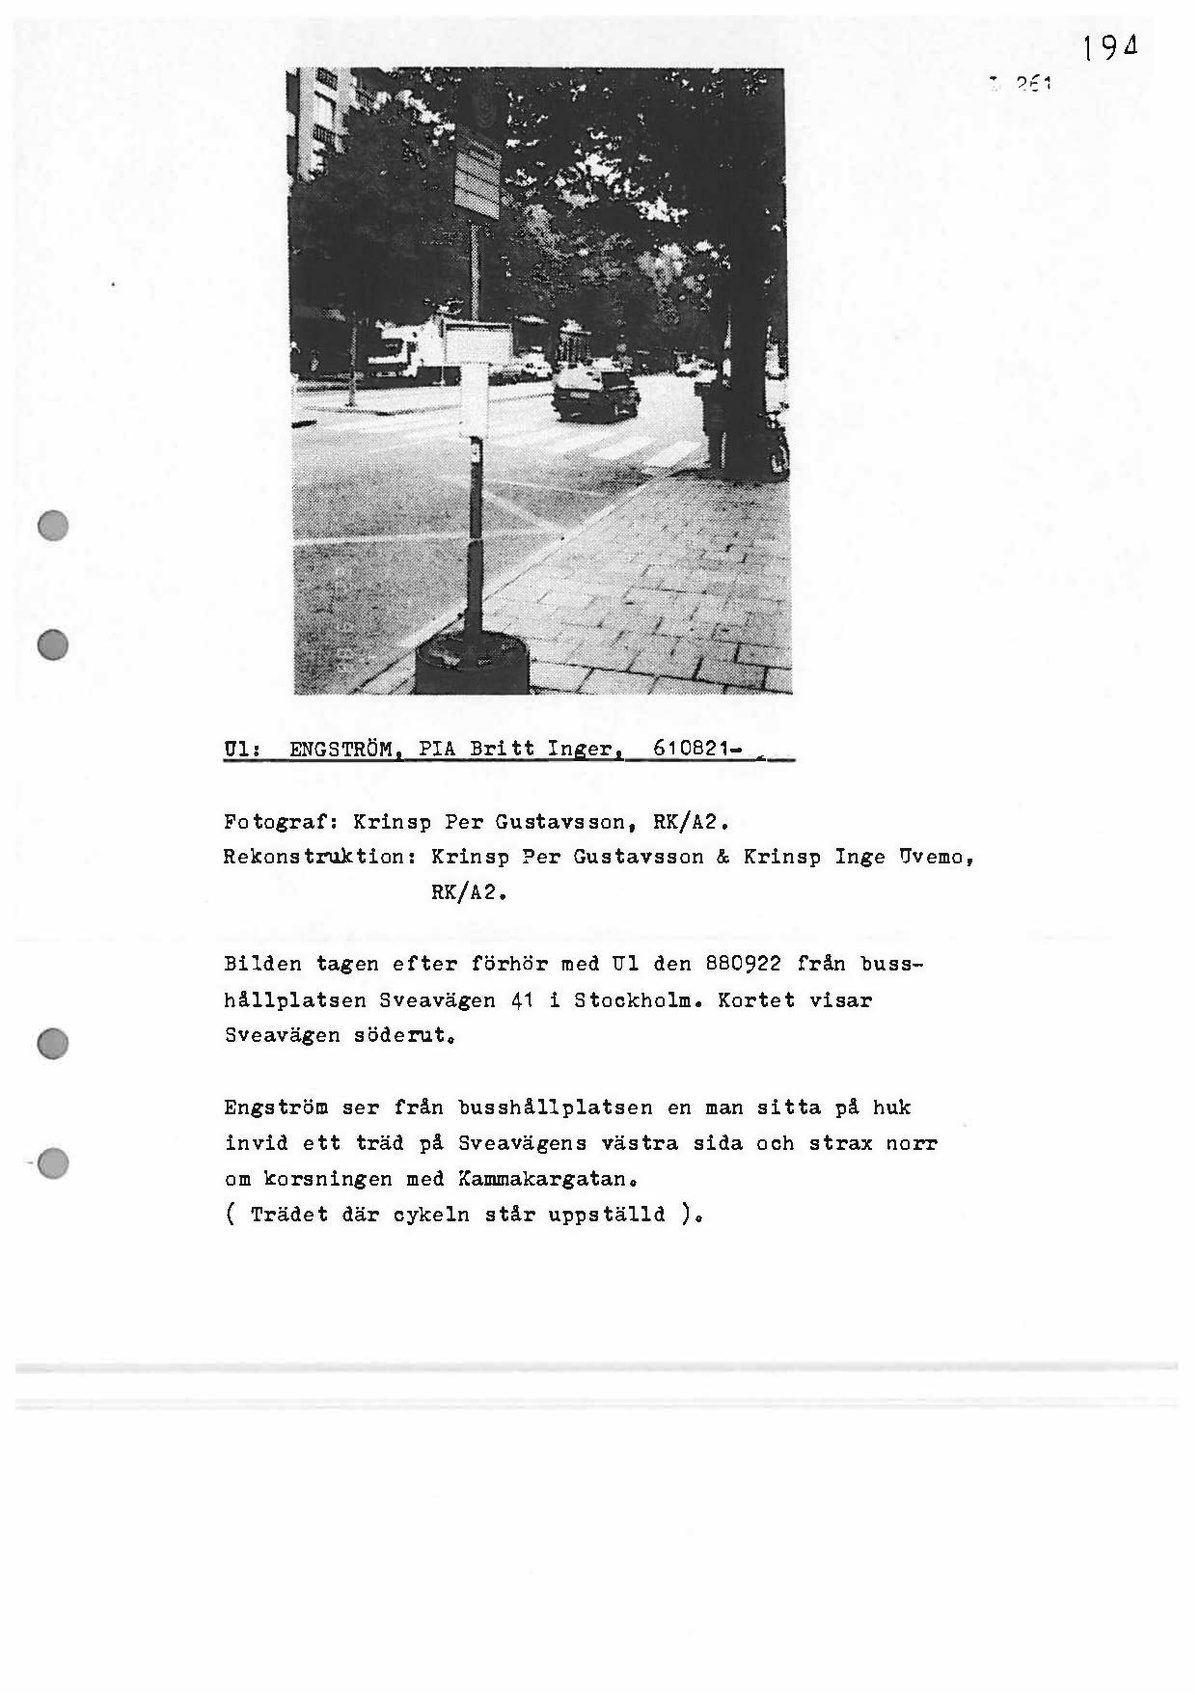 Pol-1988-09-22 L261-00-G Rekonstruktion Pia Engström.pdf